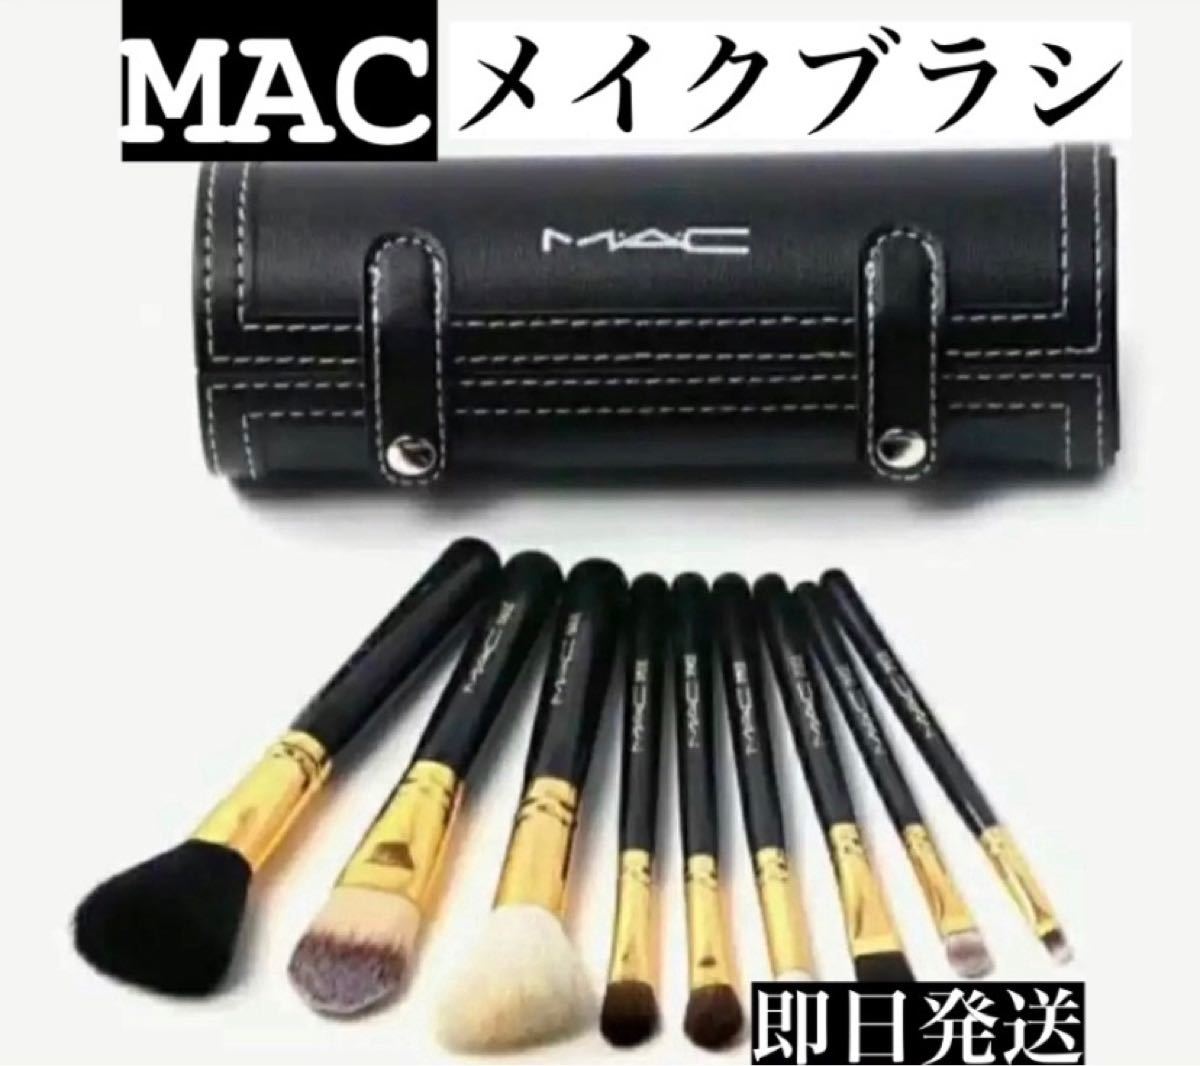 MAC メイクブラシセット-